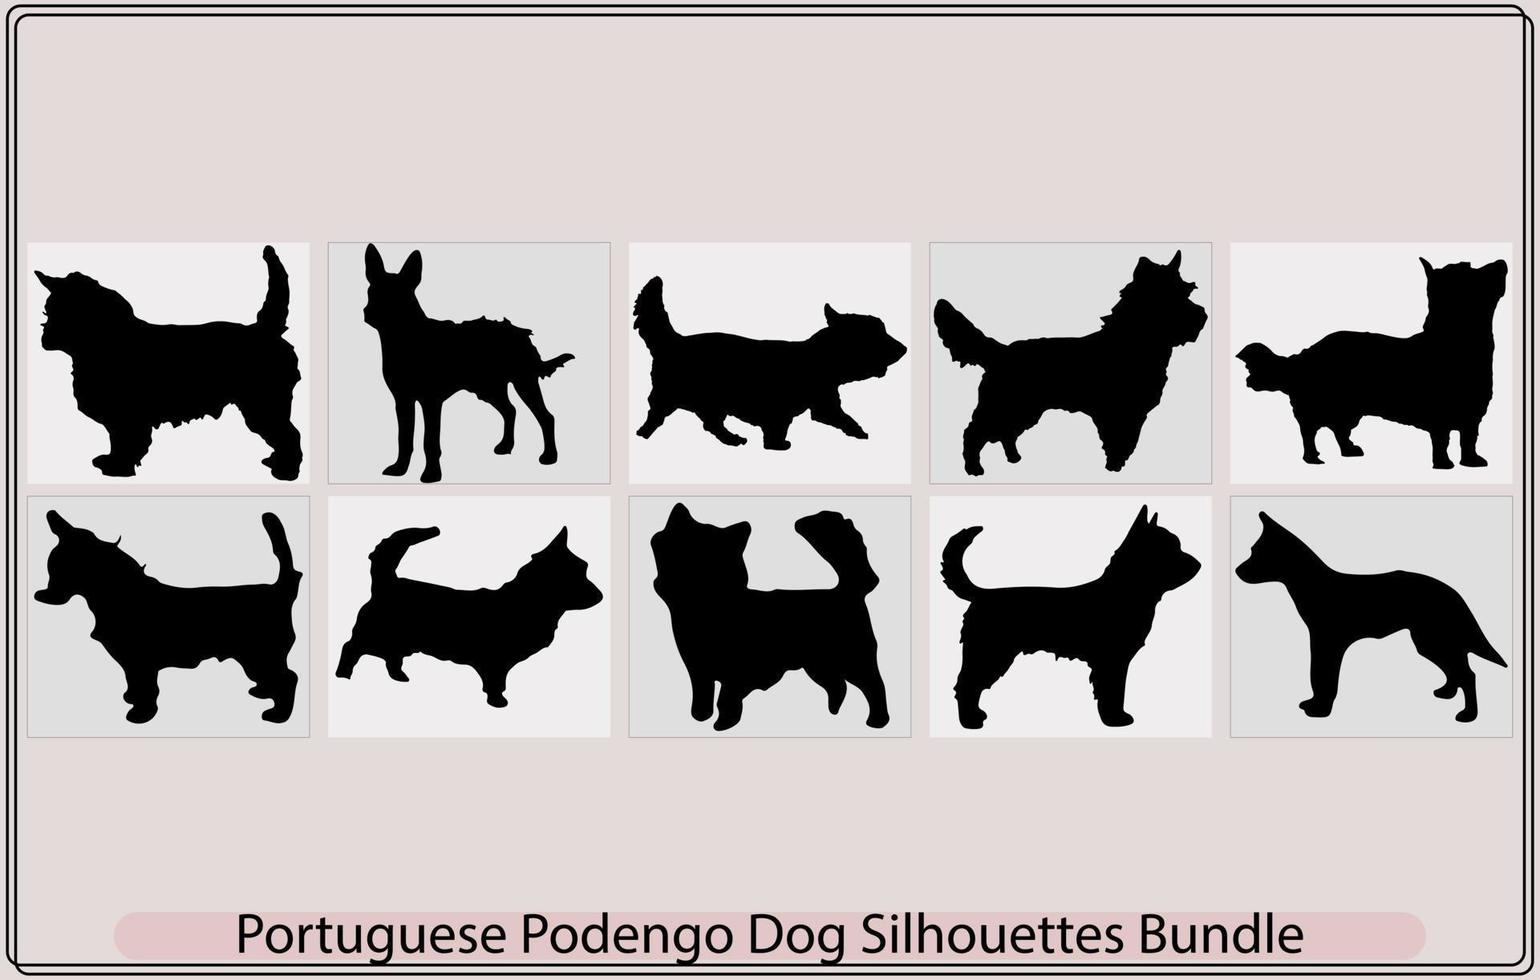 Português podengo pequeno cachorro silhueta, colorida decorativo retrato do em pé dentro perfil fio casaco Português podengo,decorativo retrato do em pé dentro perfil fio casaco Português podengo vetor